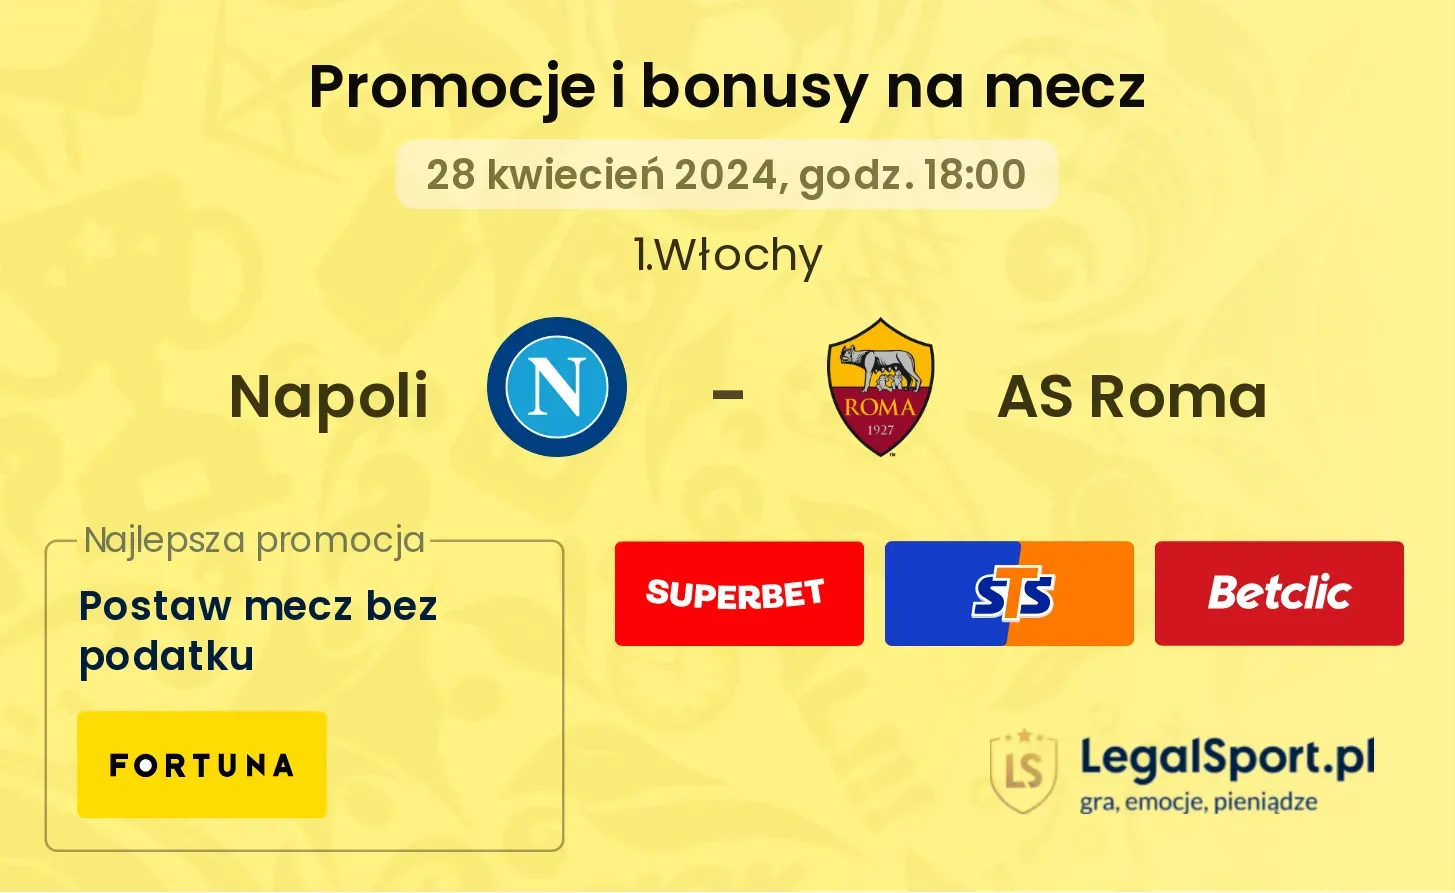 Napoli - AS Roma bonusy i promocje (28.04, 18:00)